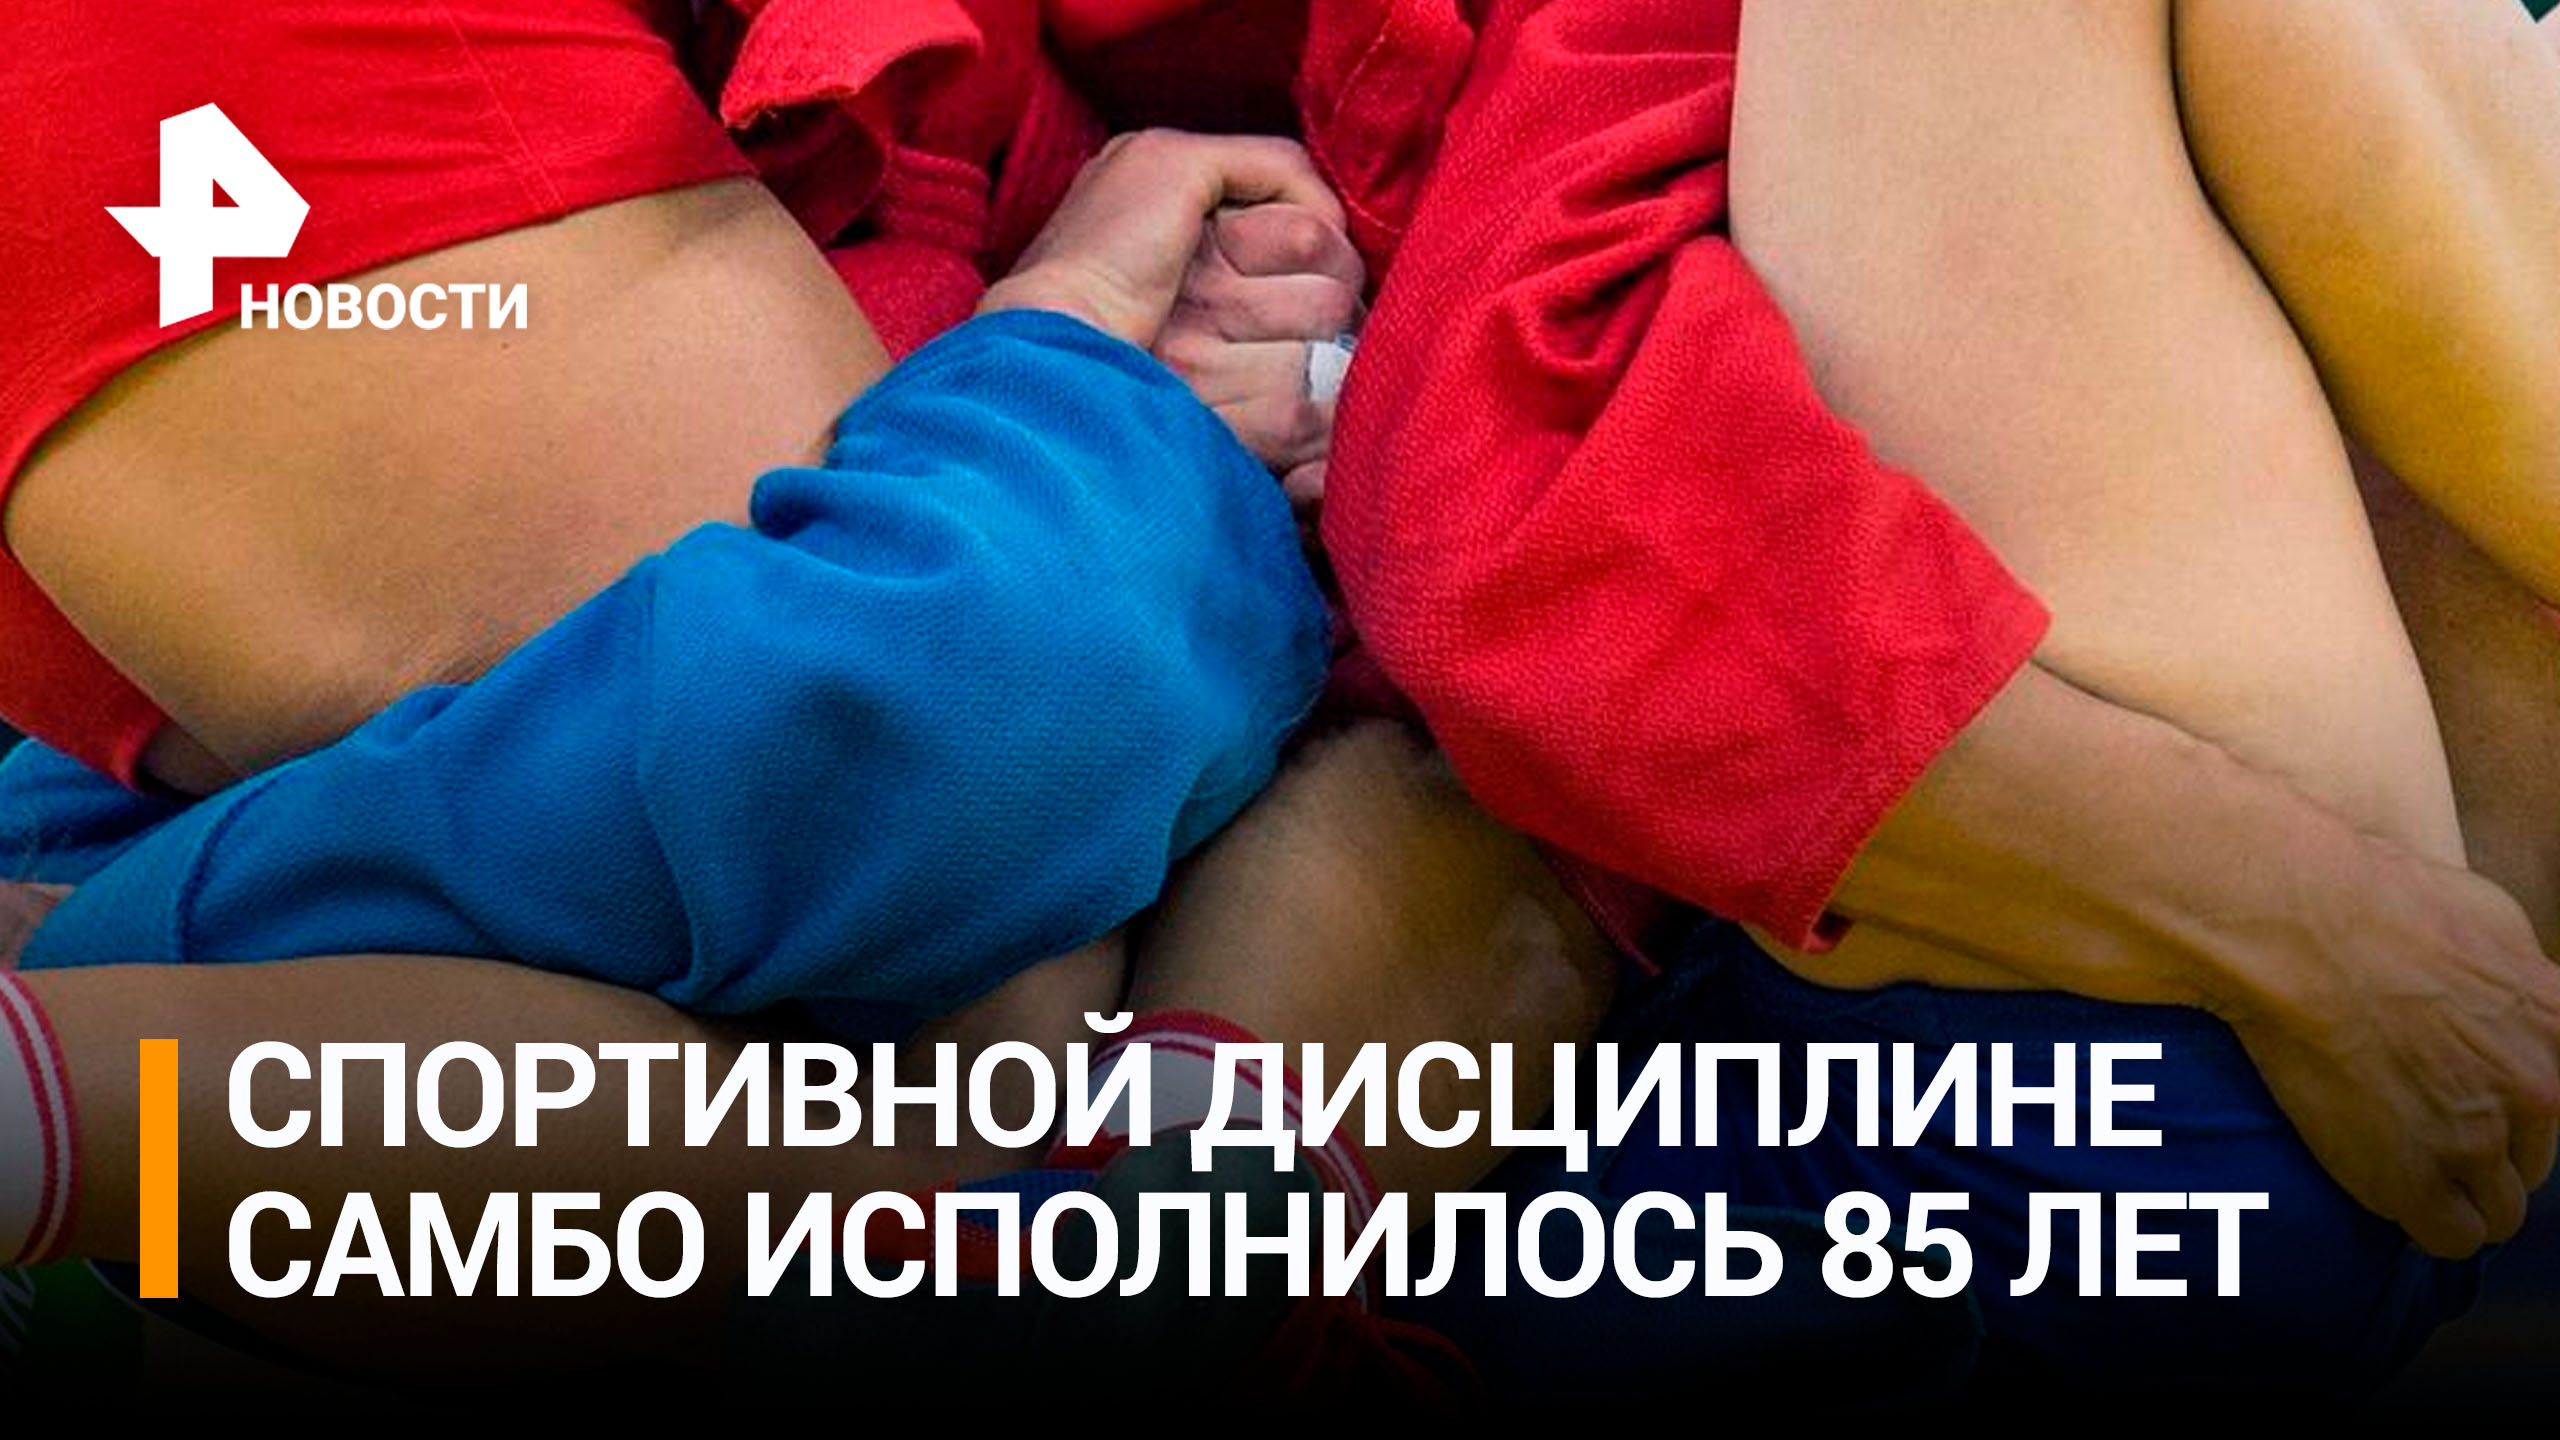 Спортивной дисциплине самбо исполнилось 85 лет / РЕН Новости